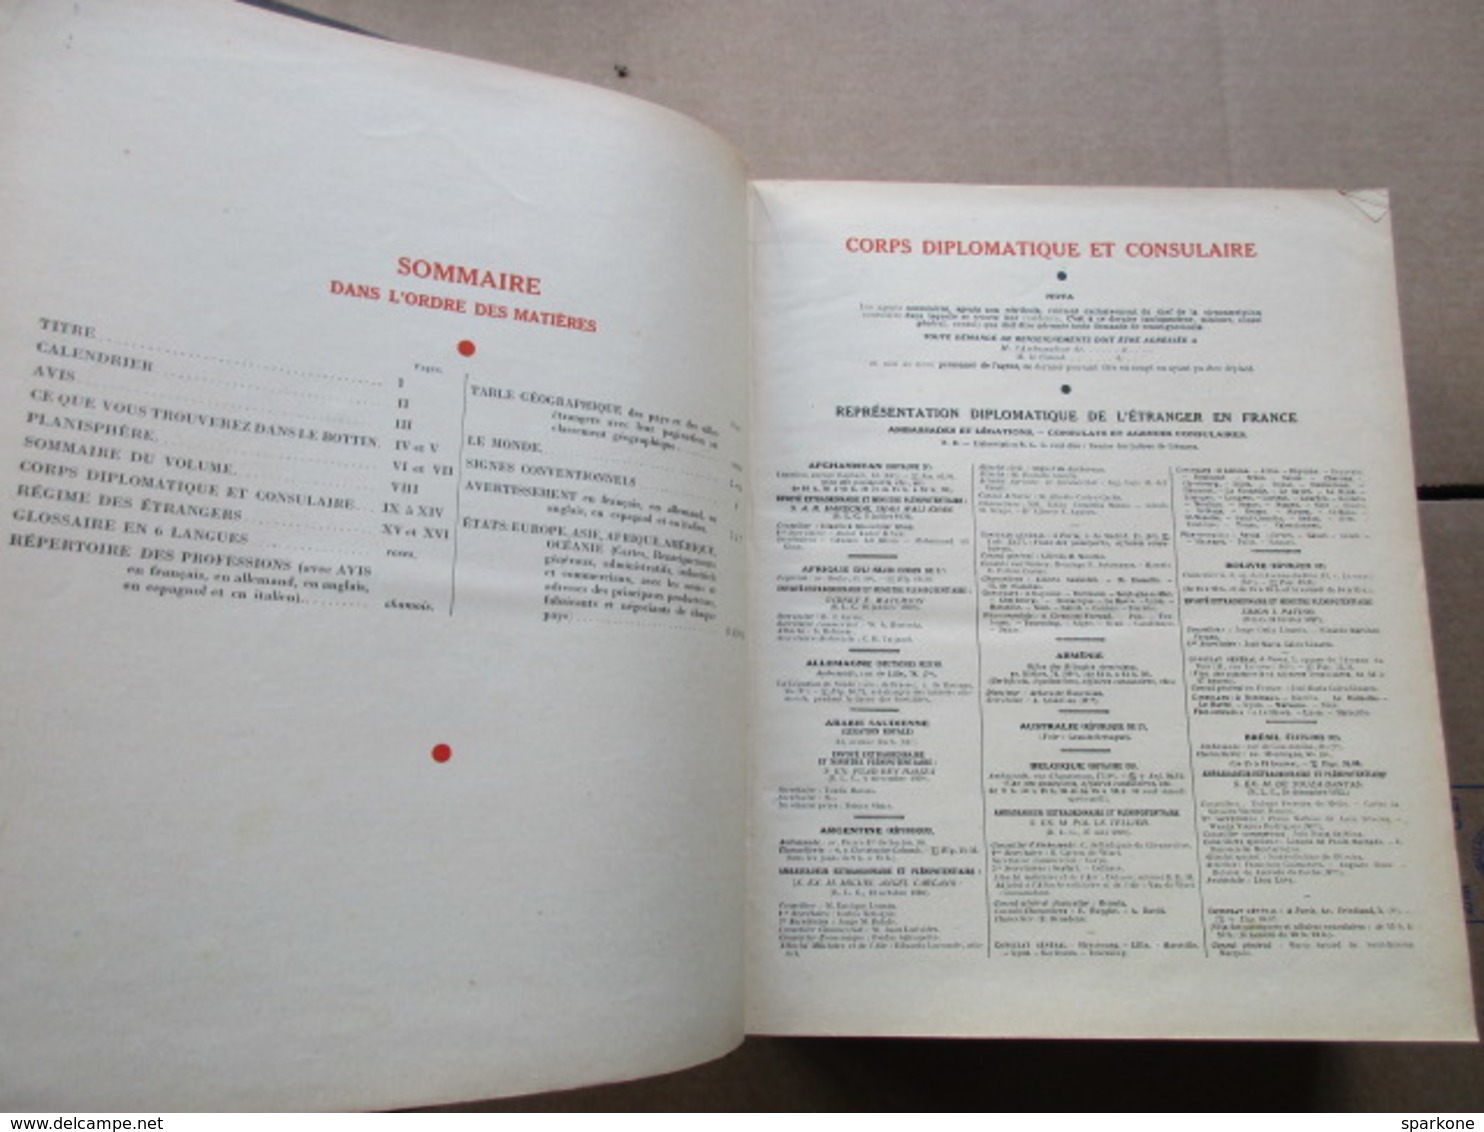 Annuaire du Commerce / Didot-Bottin / Etranger - Répertoire Professions et classement Géographique de 1940